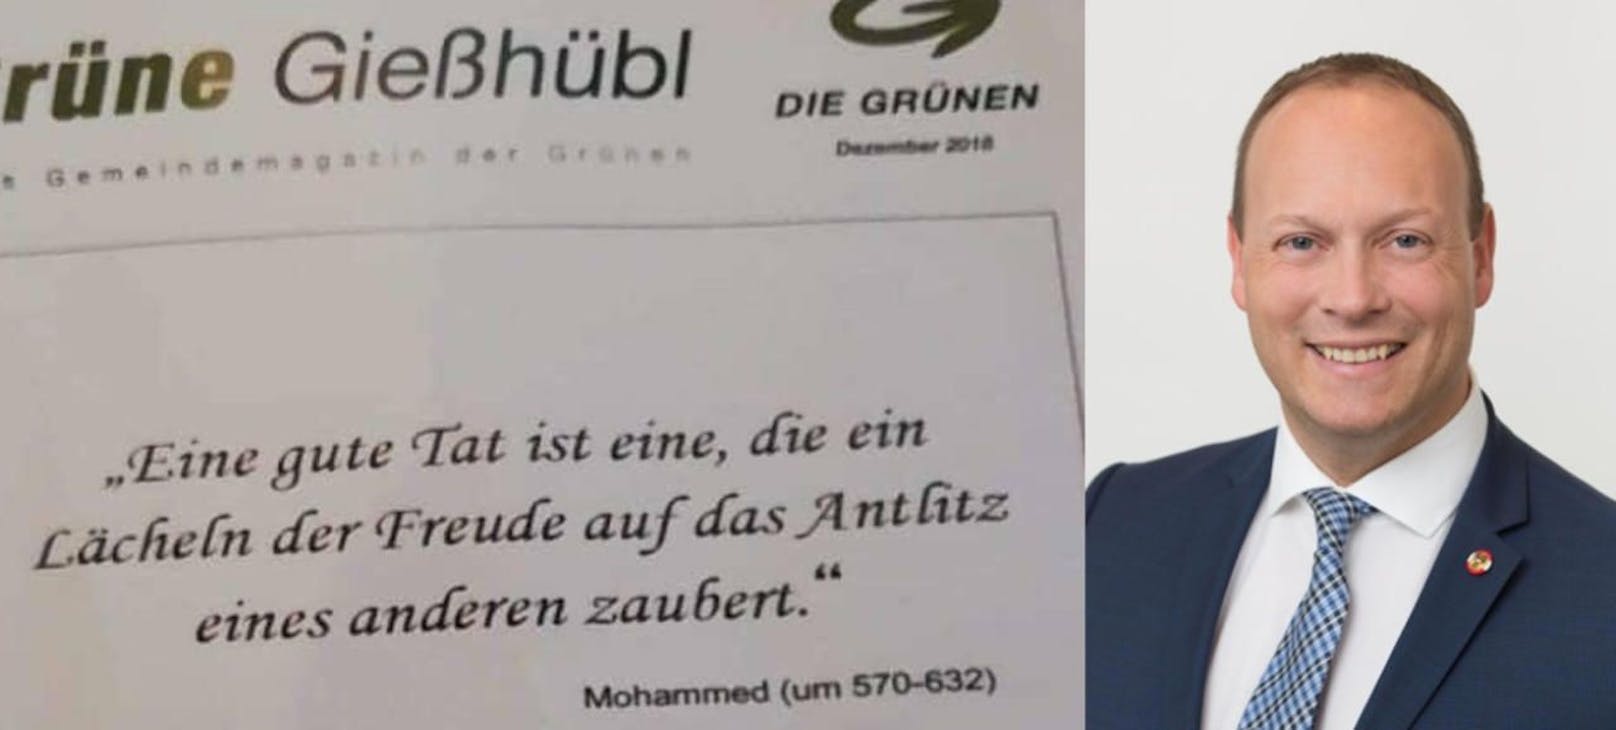 Christian Höbart ist über das Mohammed-Zitat in der Gemeindezeitung der Grünen nicht sonderlich erfreut.